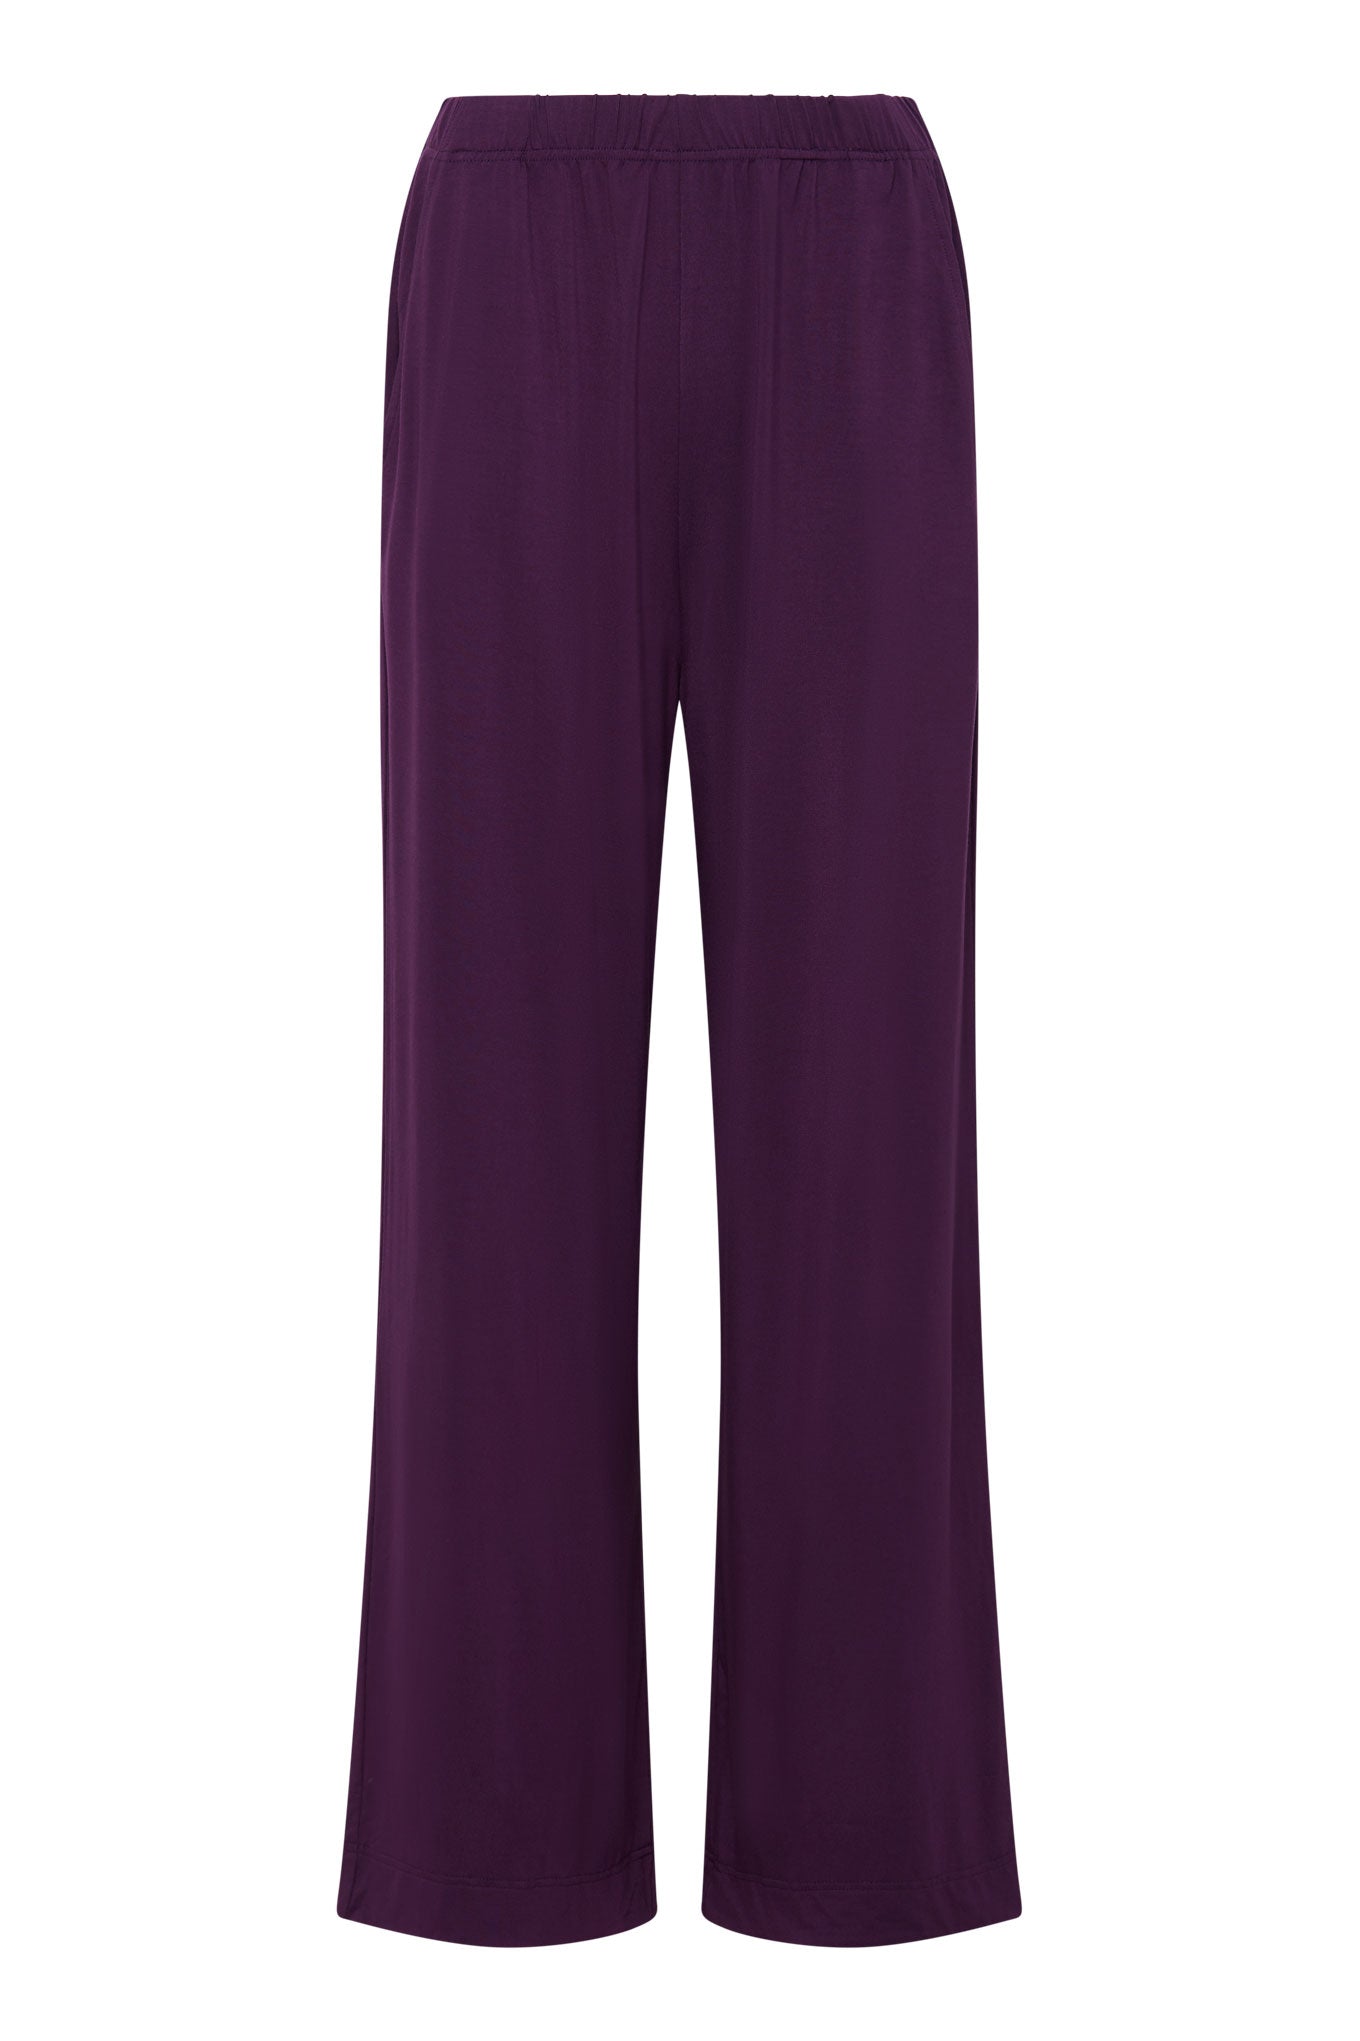 Pantalon couleur mauve BINITA en modal par Komodo